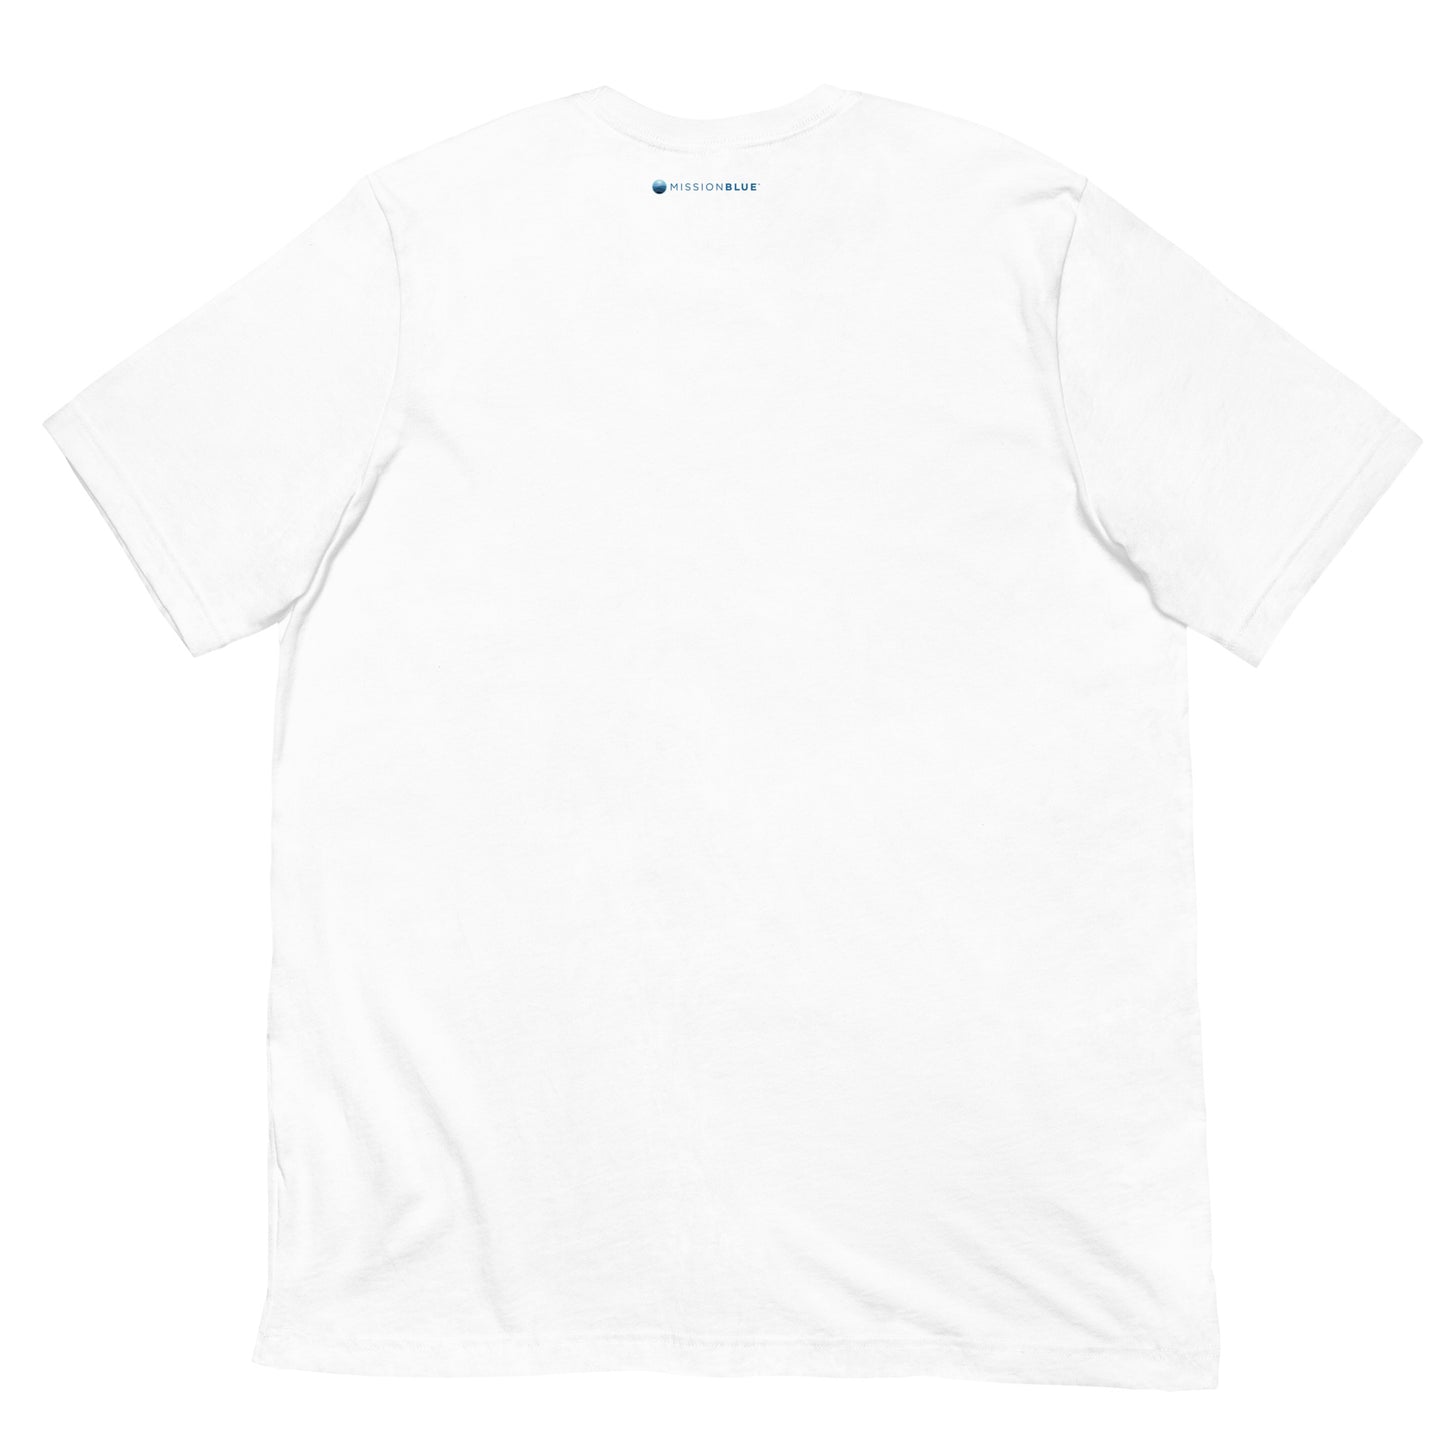 Unisex T-shirt – White or Steel Blue